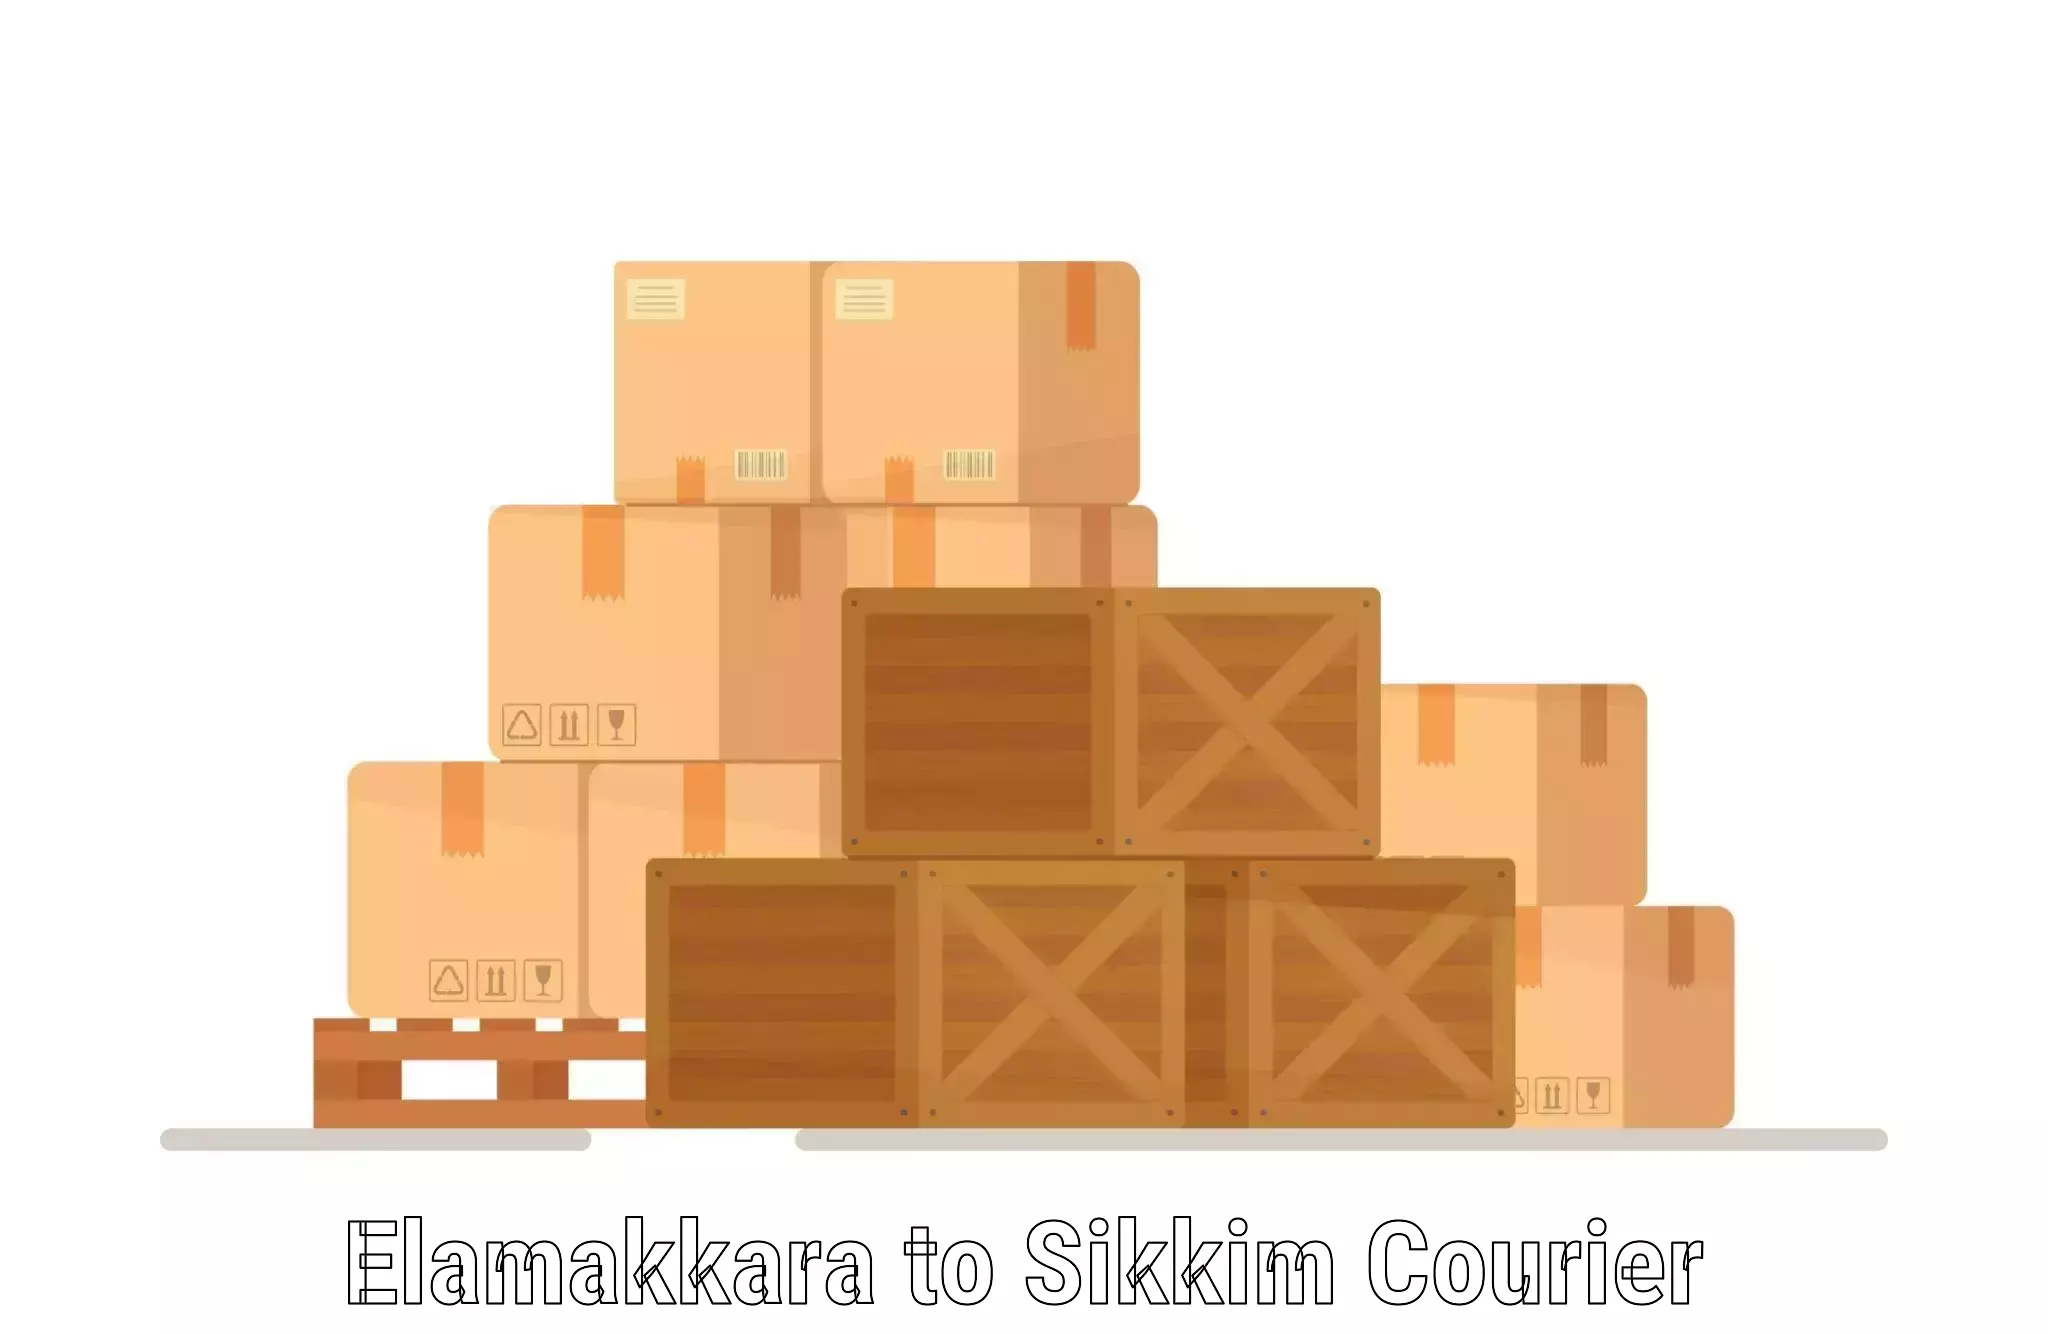 Package delivery network Elamakkara to Ravangla